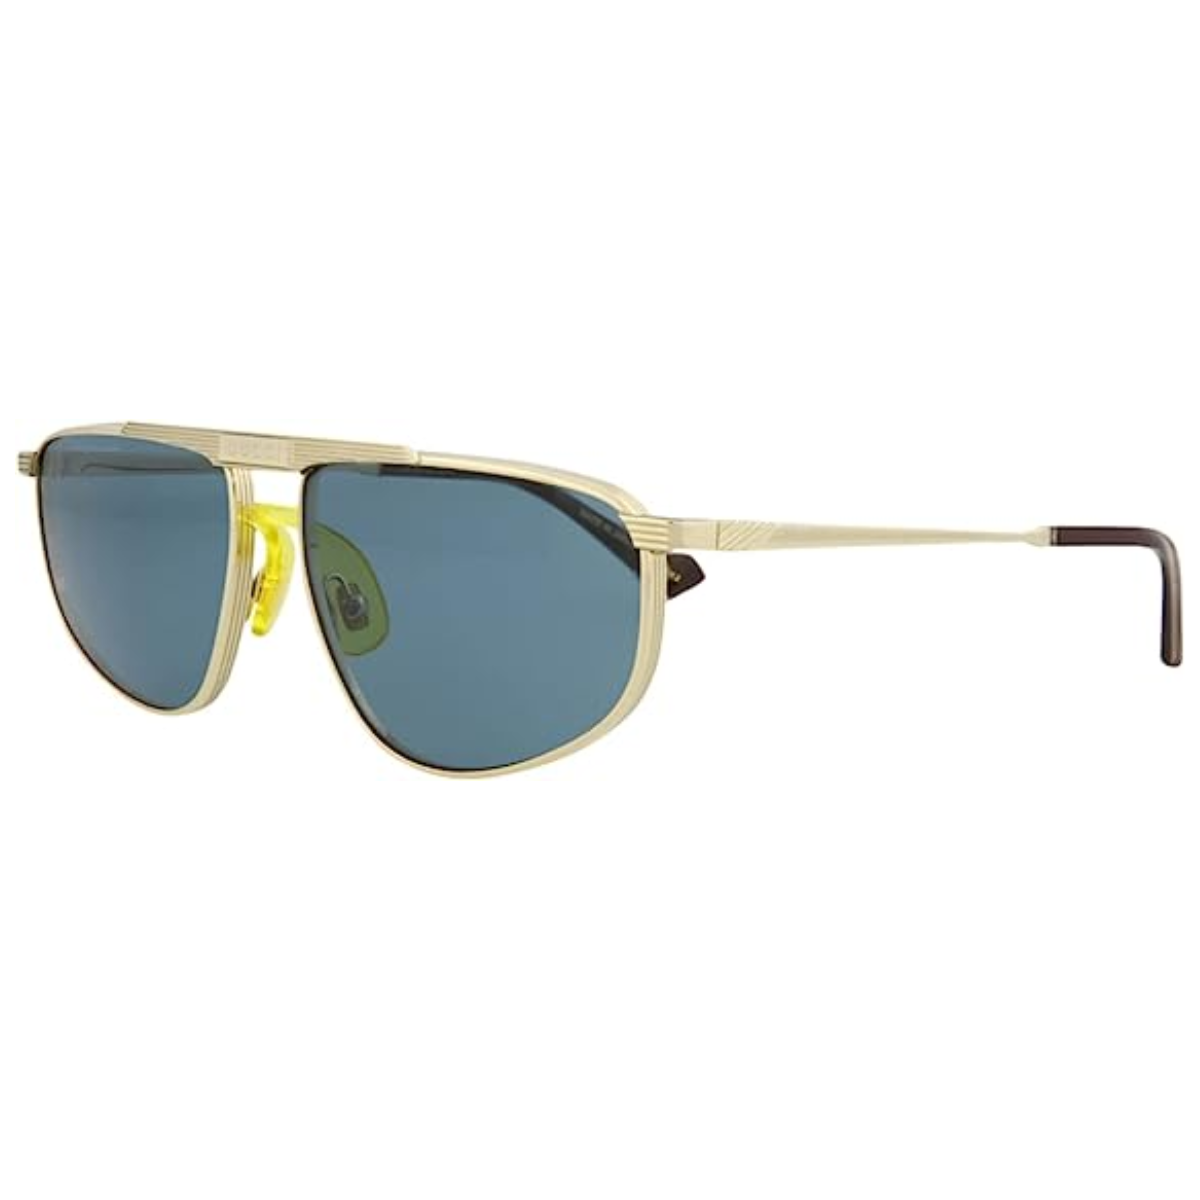 "Explore Men's Fashion: Gucci 0841S Sunglasses at Optorium"